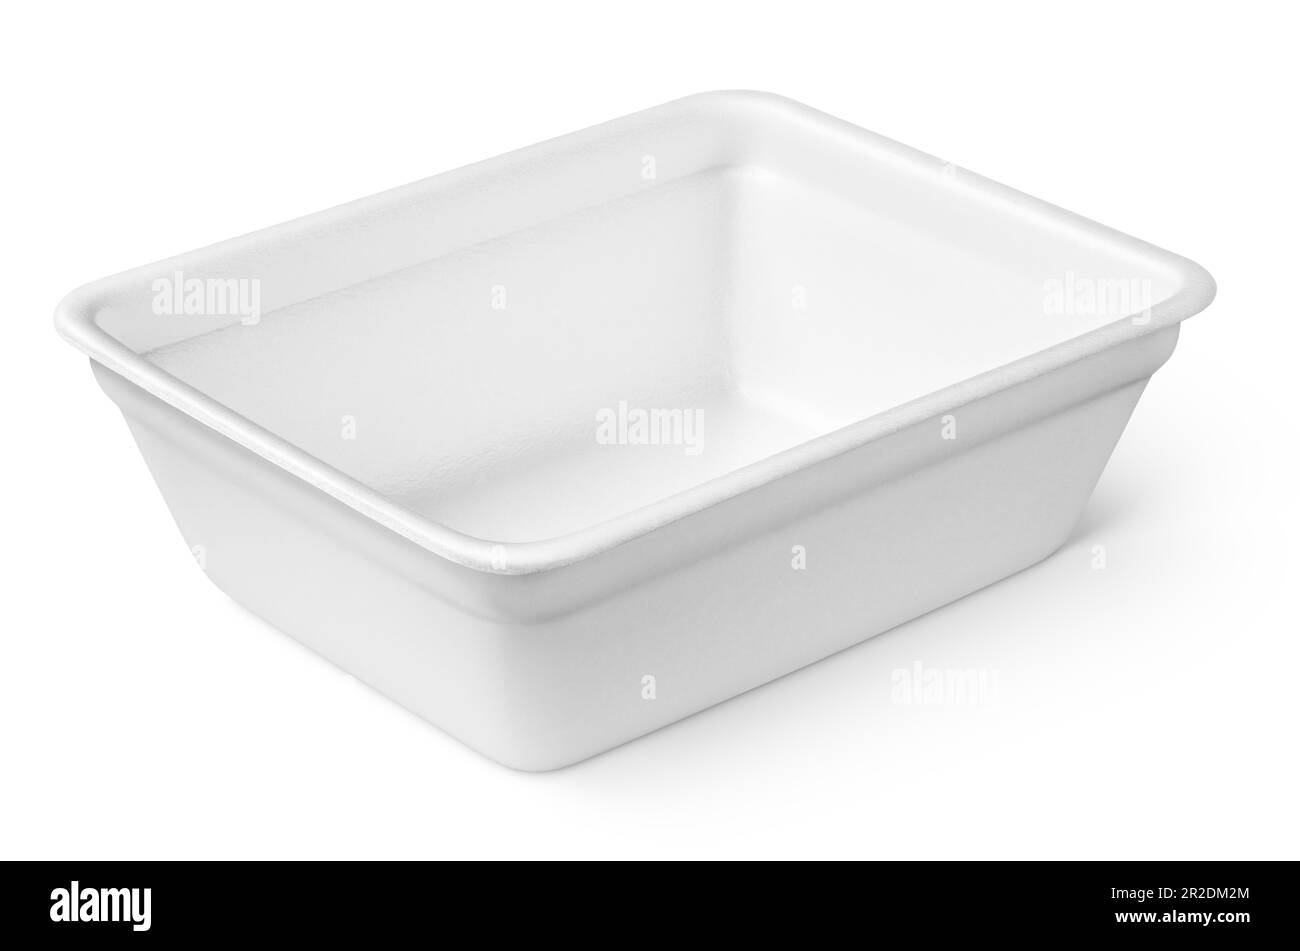 Contenedor de alimentos de espuma de poliestireno vacío o placa de plástico aislado en fondo blanco con ruta de recorte Foto de stock